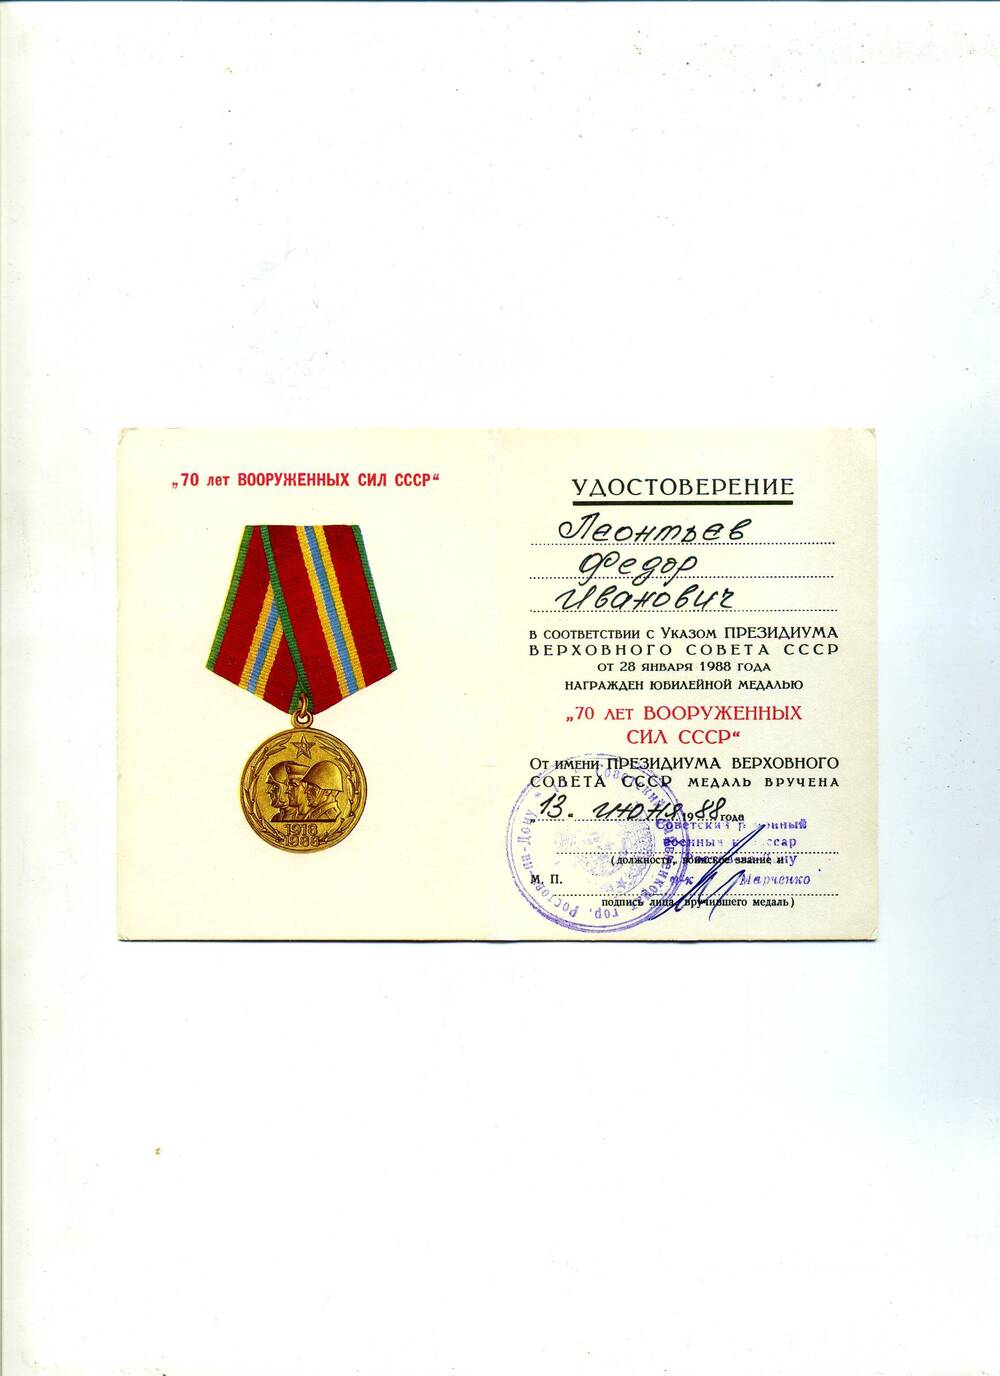 Удостоверение к медали 70 лет Вооружённых Сил СССР  Ленотьева Ф.И., выданное 13 июня 1988 г.